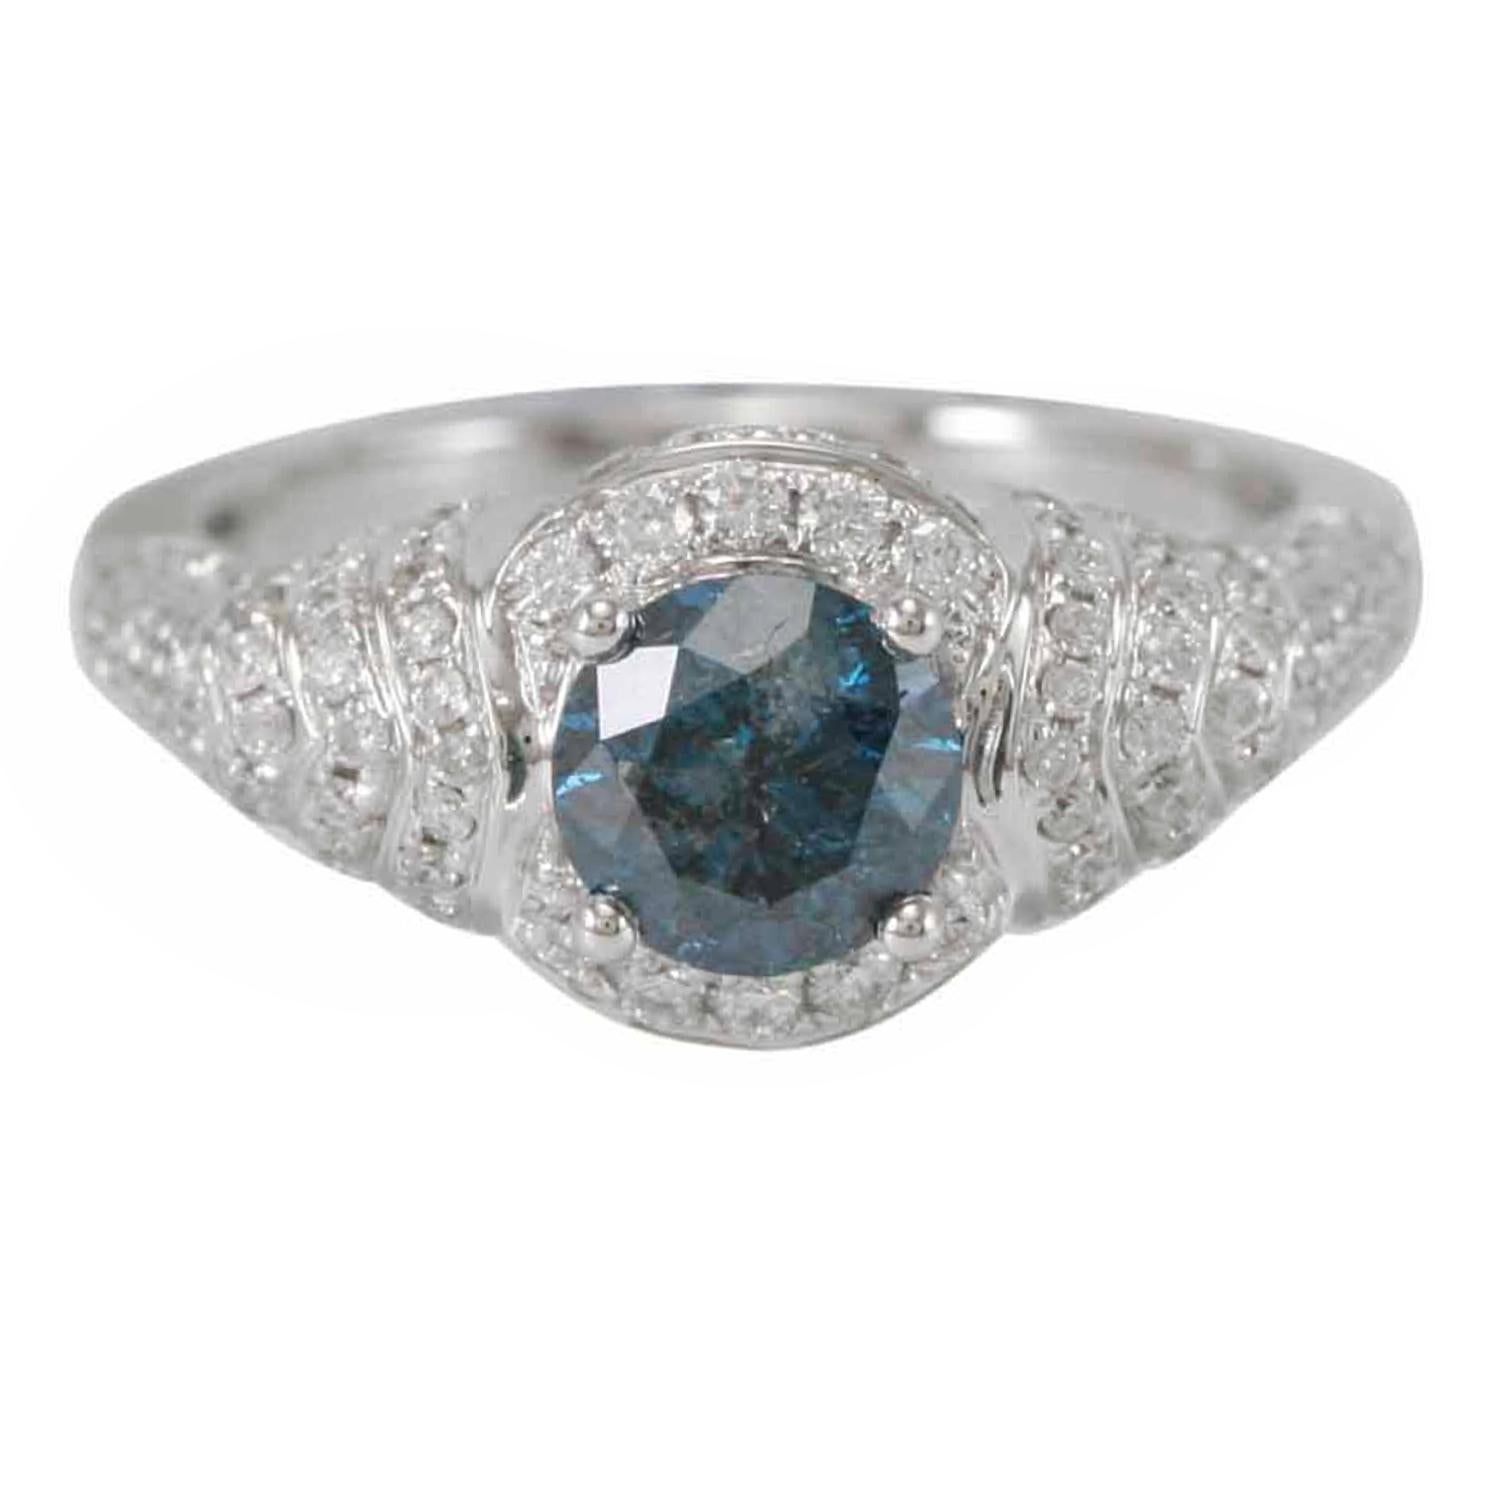 Cette superbe bague unique en son genre de la collection Suzy Levian Limited Edition présente une magnifique pierre centrale en diamant bleu de taille ronde (1,00 ct) avec un ensemble de diamants blancs (0,79 ct), sertis dans une monture en or blanc